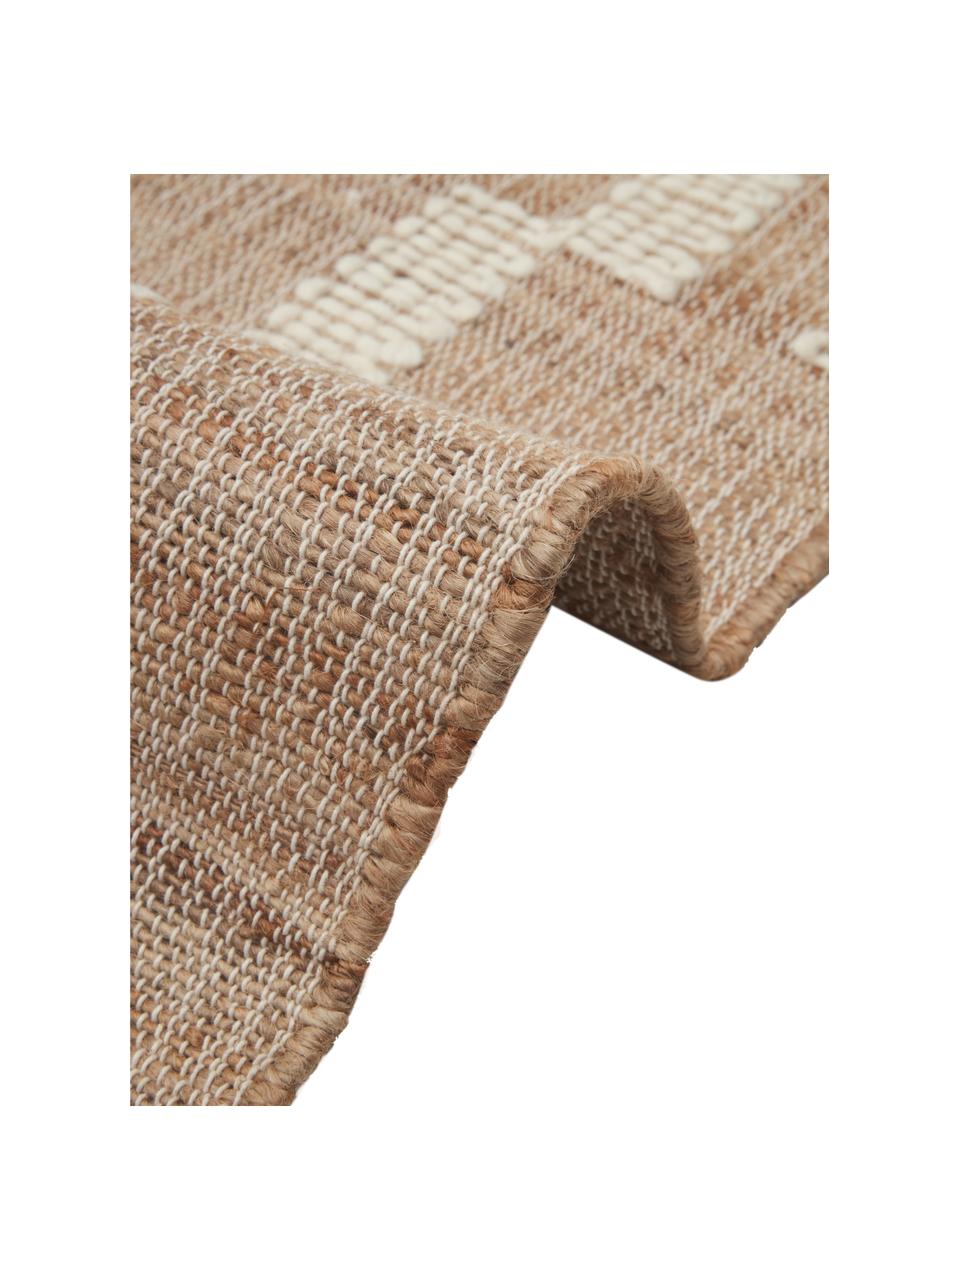 Handgefertigte Jute-Fußmatte Kerala mit Fransen, 68 % Jute, 23 % Baumwolle, 9 % Wolle, Braun, Cremeweiß, B 50 x L 80 cm